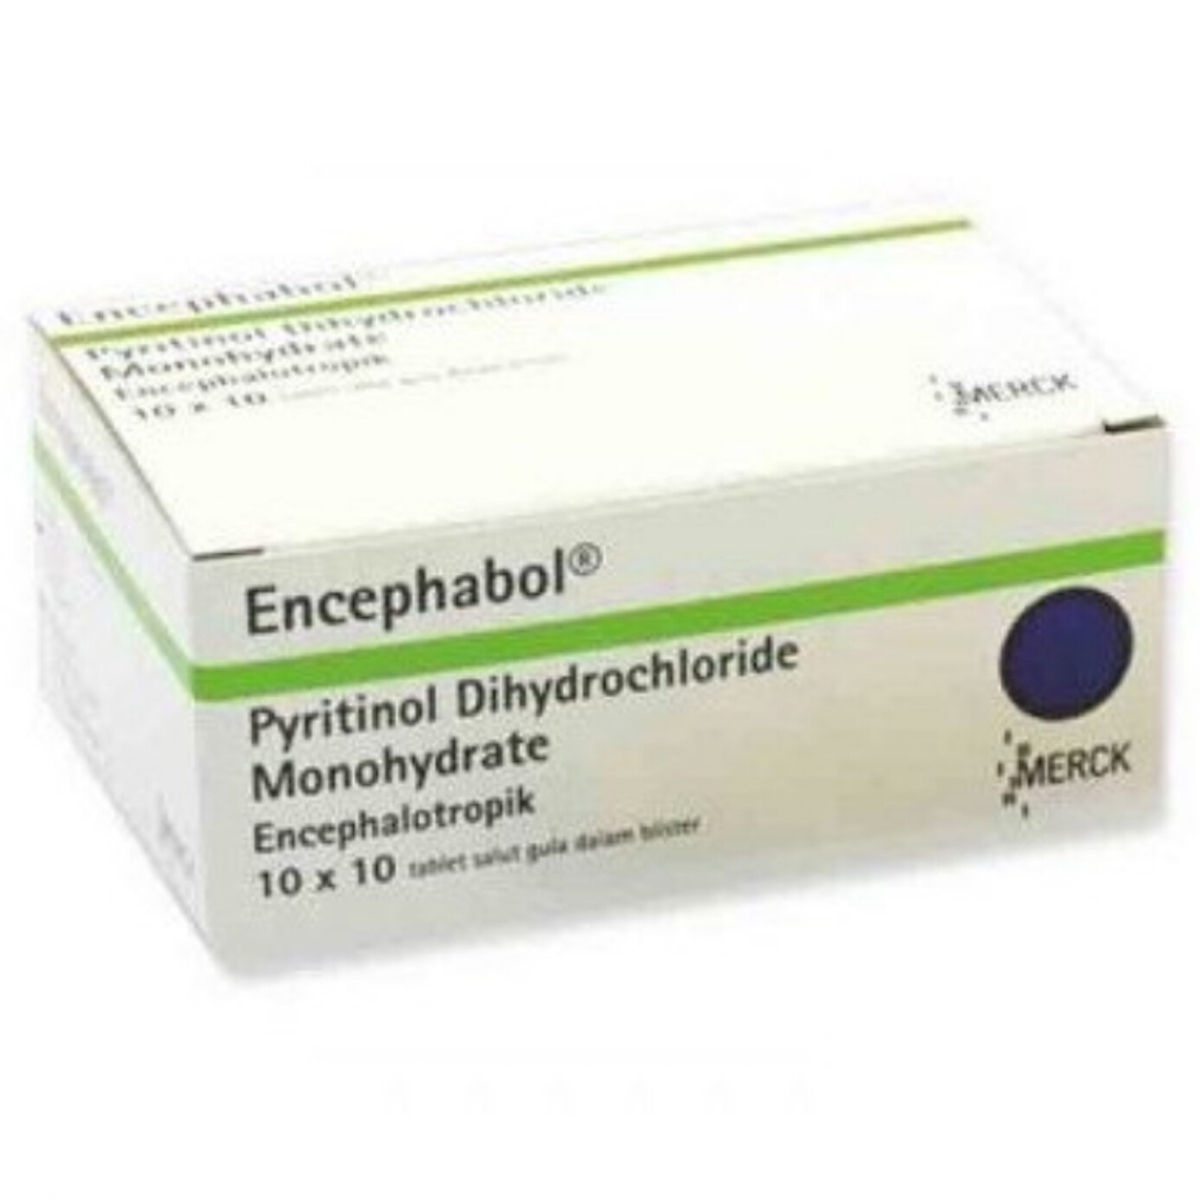 Buy Encephabol 200 mg Tablet 10's Online